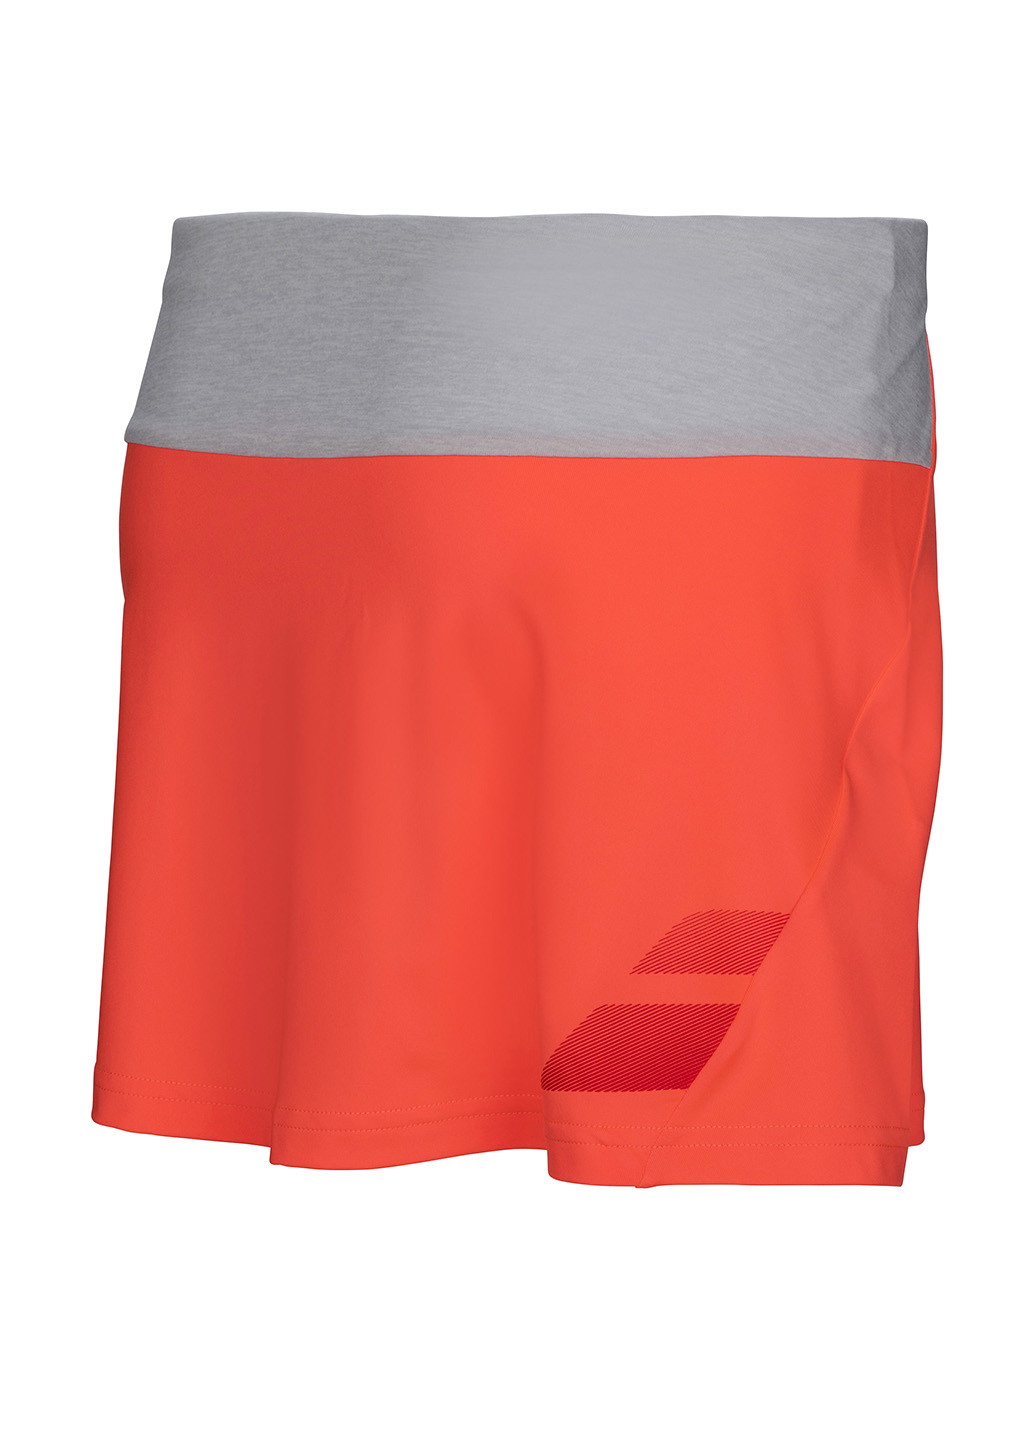 Оранжевая спортивная с логотипом юбка Babolat мини